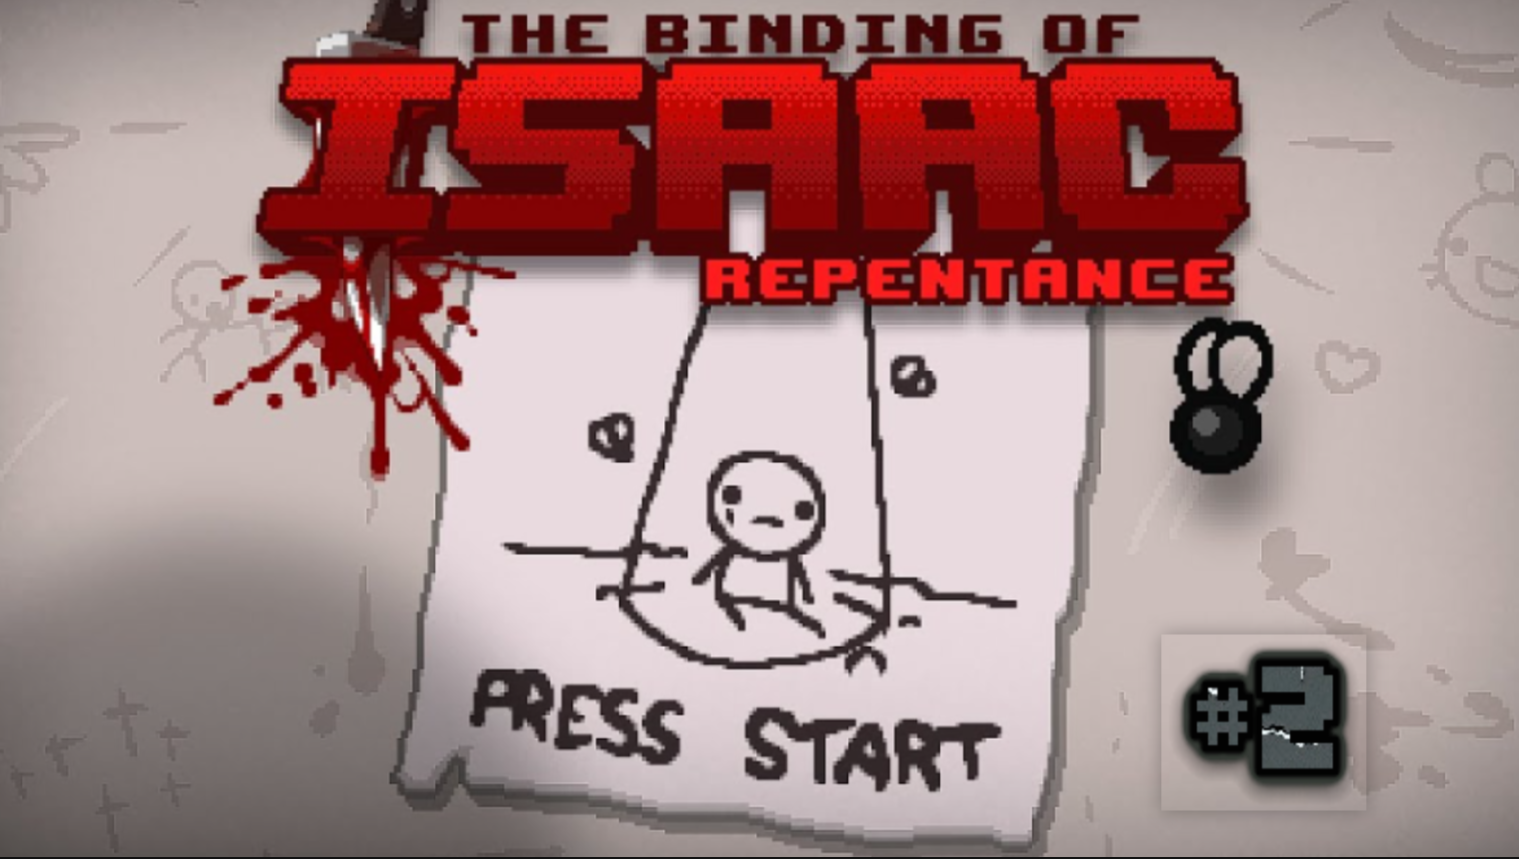 The Binding of Isaac: Repentance #2 "Прохожу первое испытание"